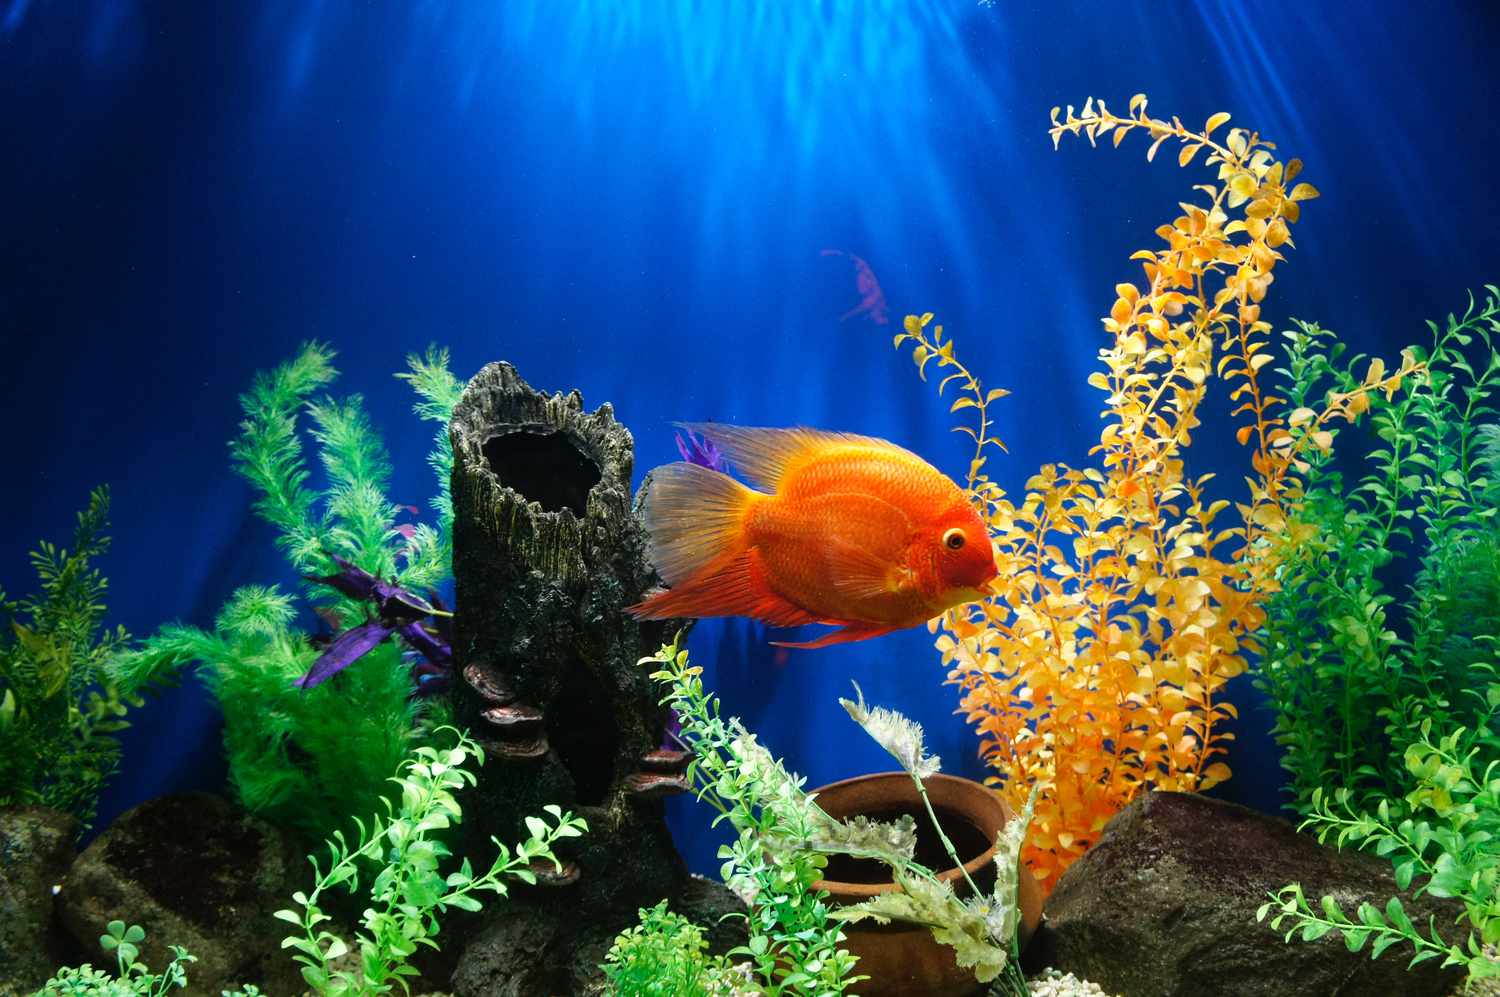 Goldfisch in einem Aquarium mit bunten Pflanzen